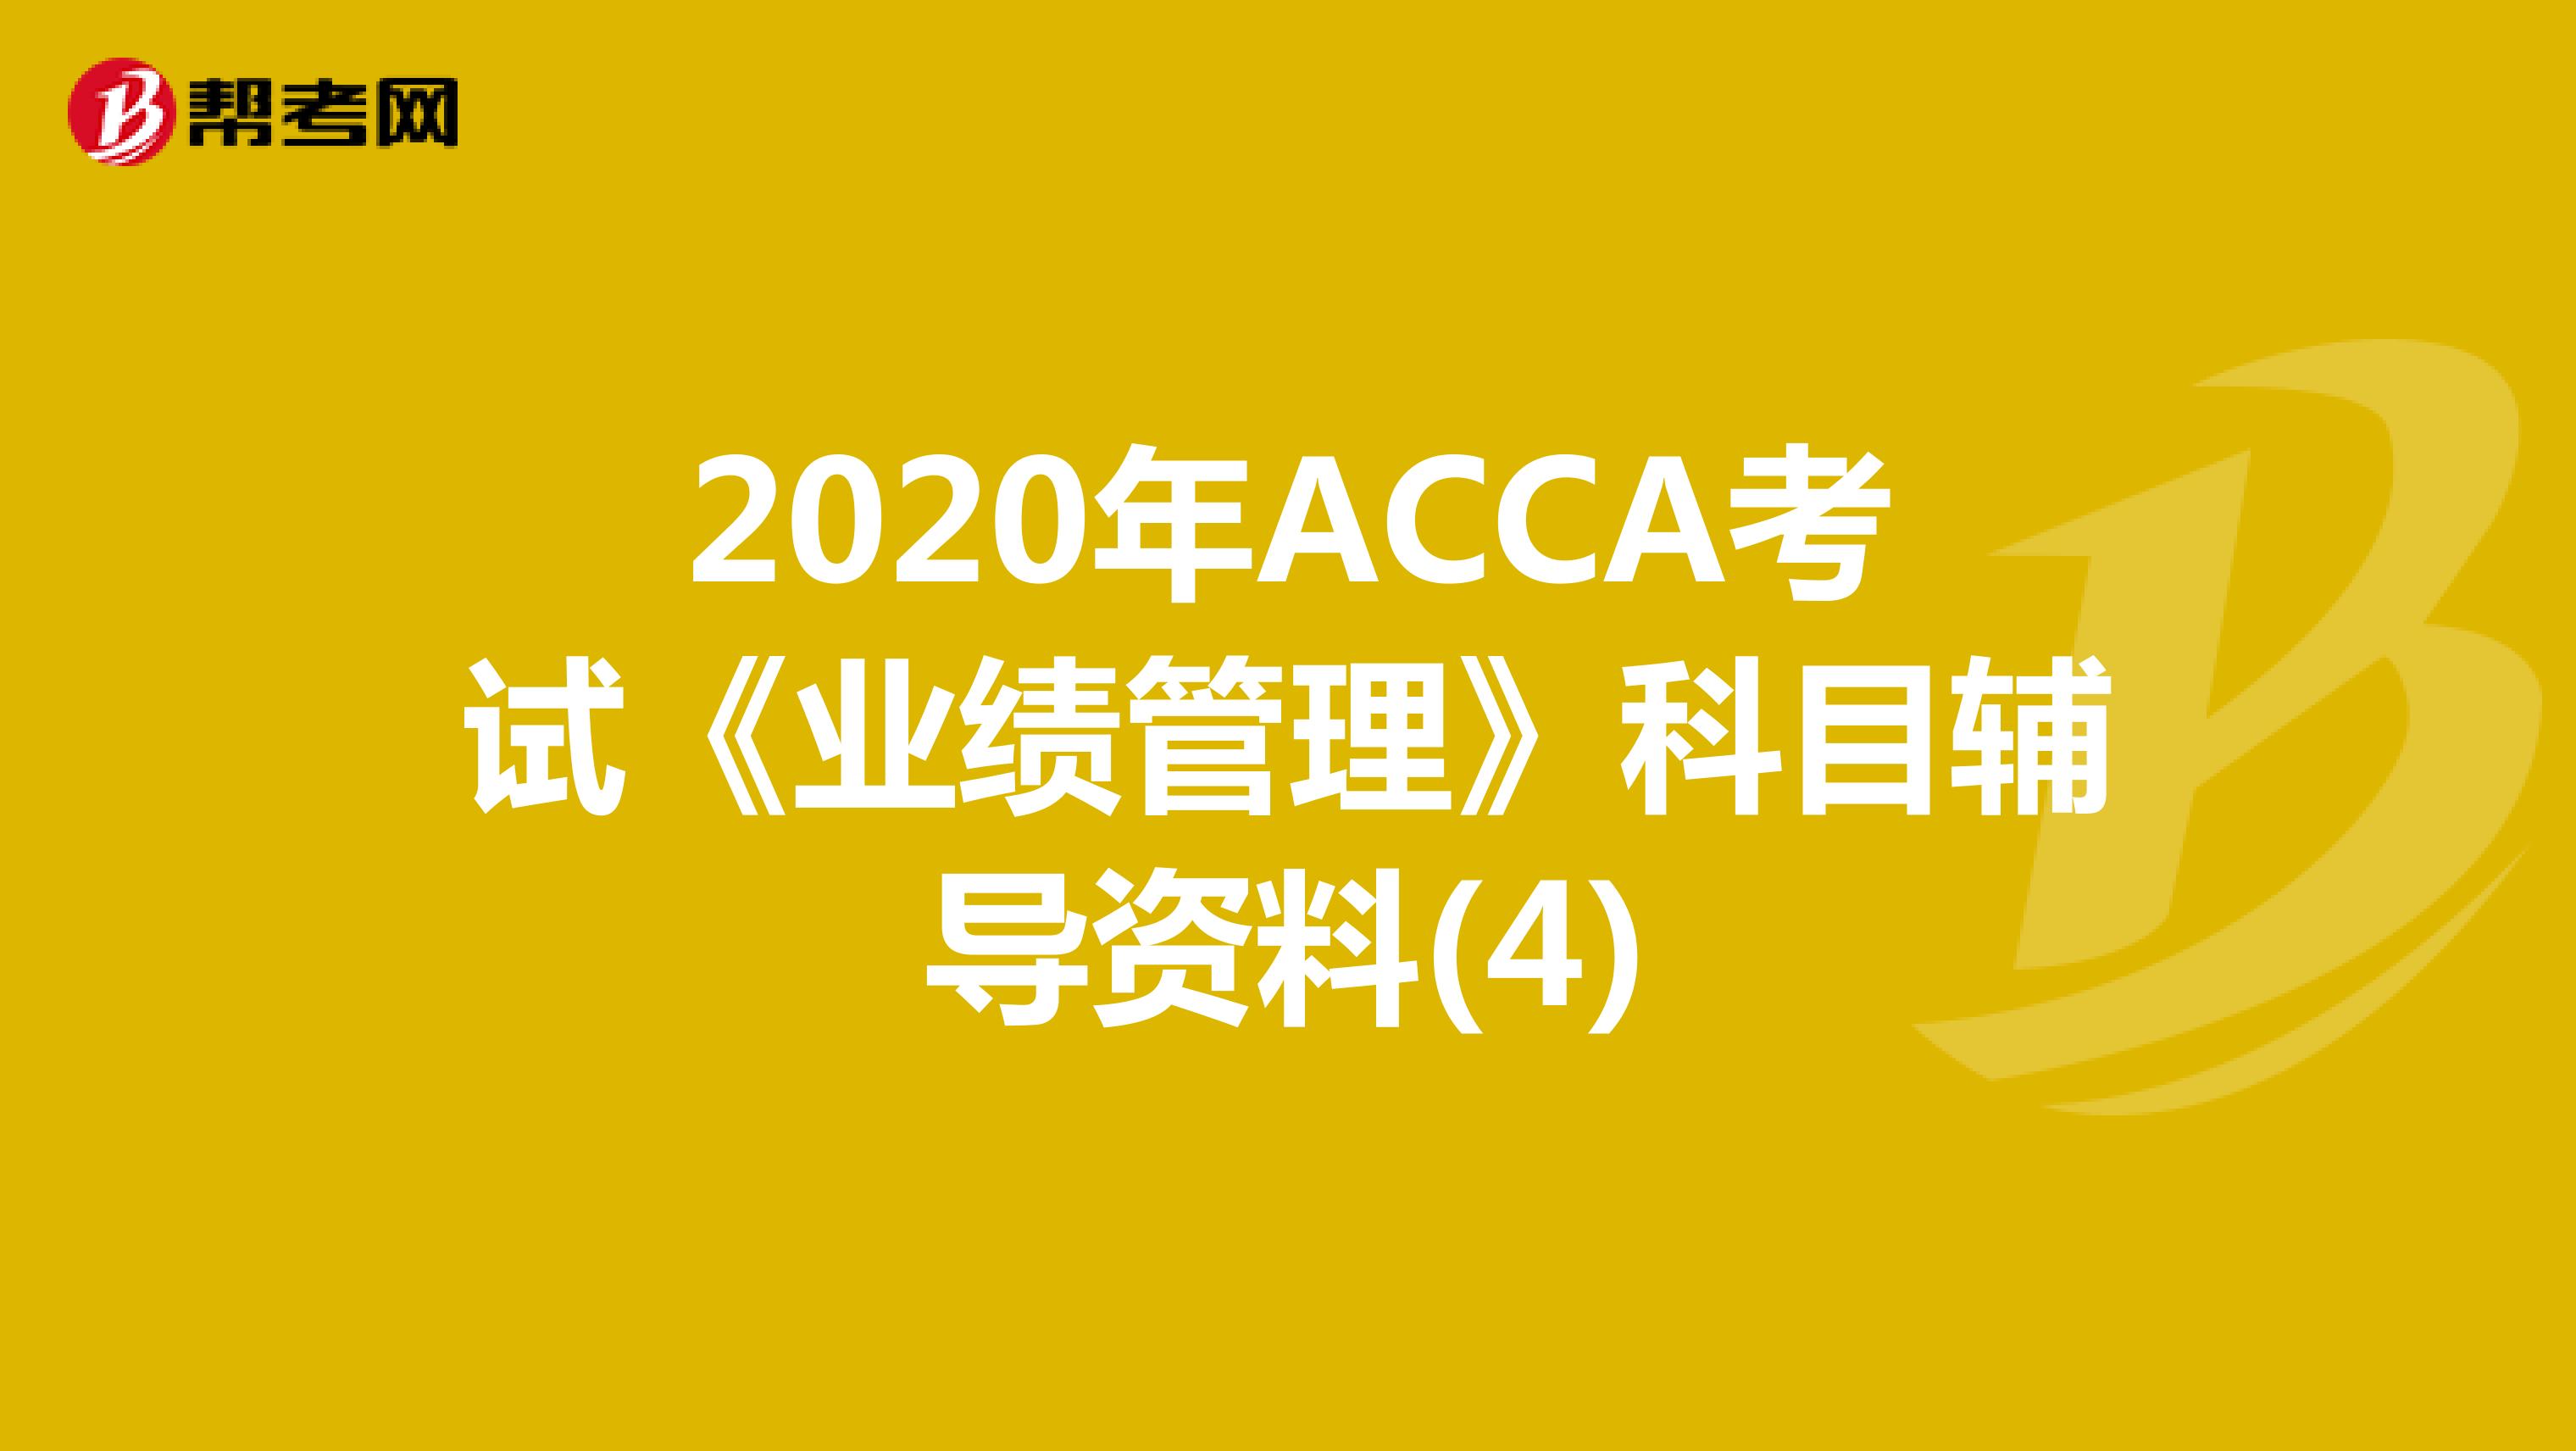 2020年ACCA考试《业绩管理》科目辅导资料(4)